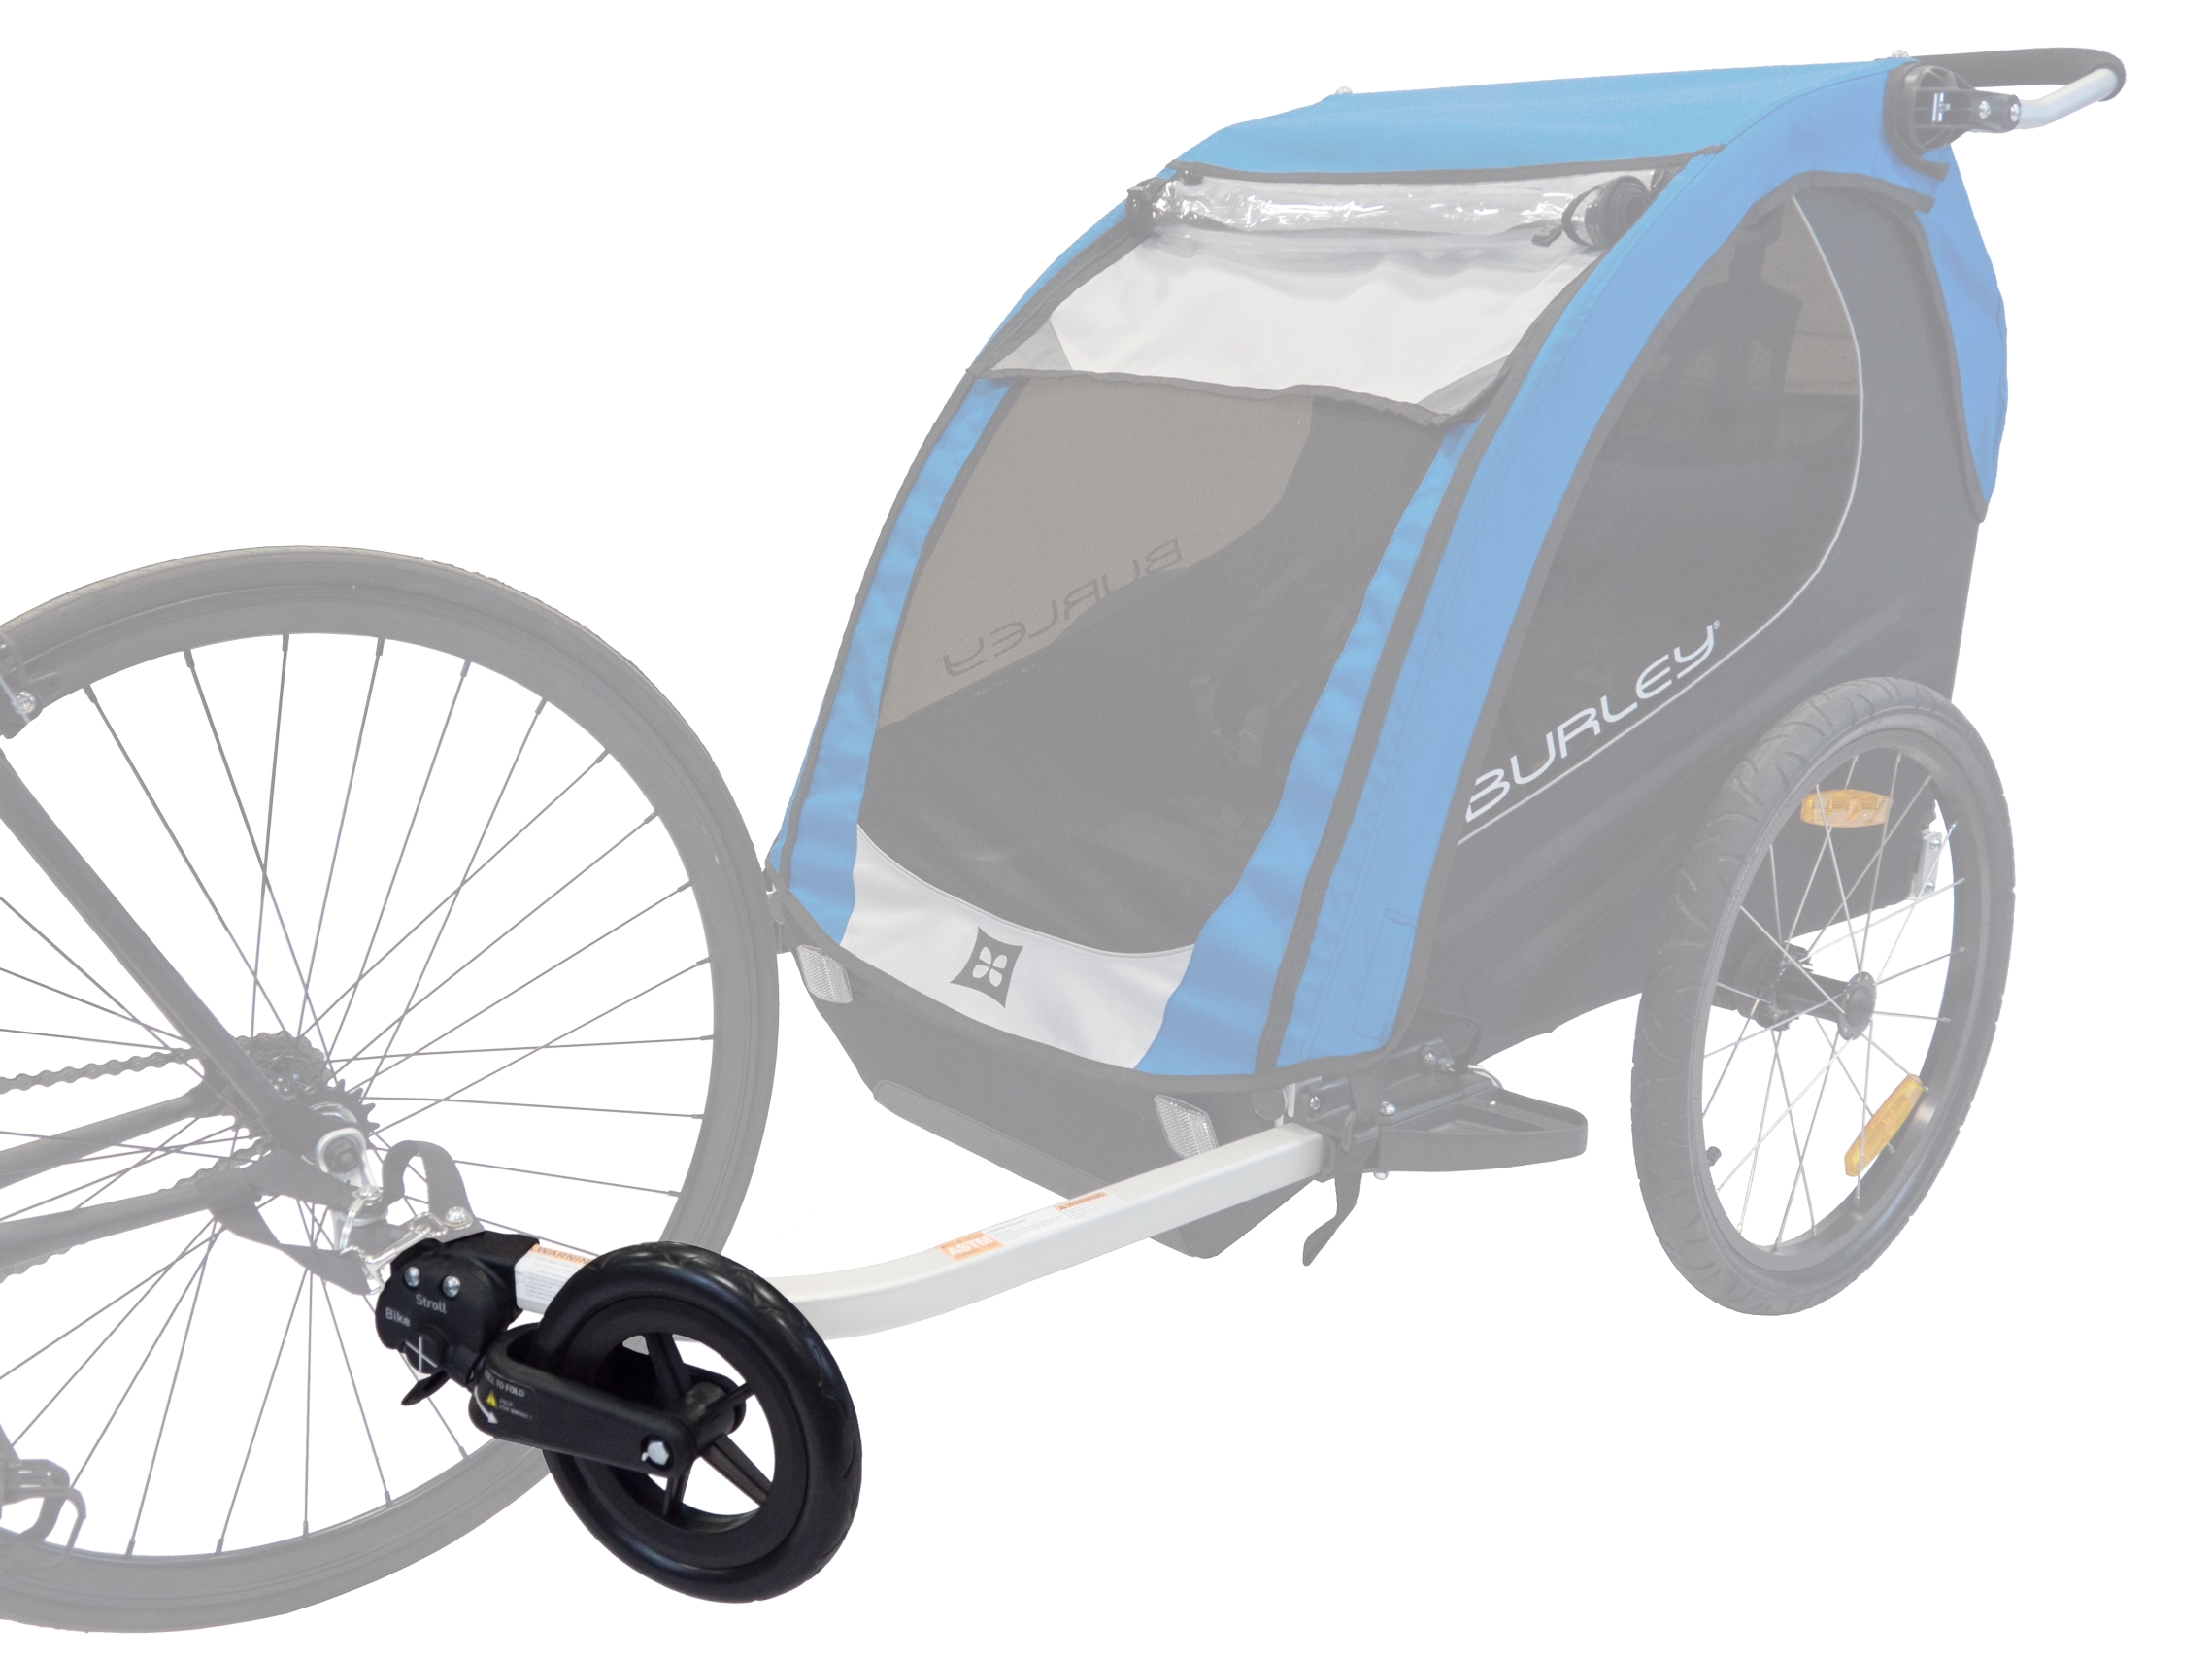 burley 1 wheel stroller kit